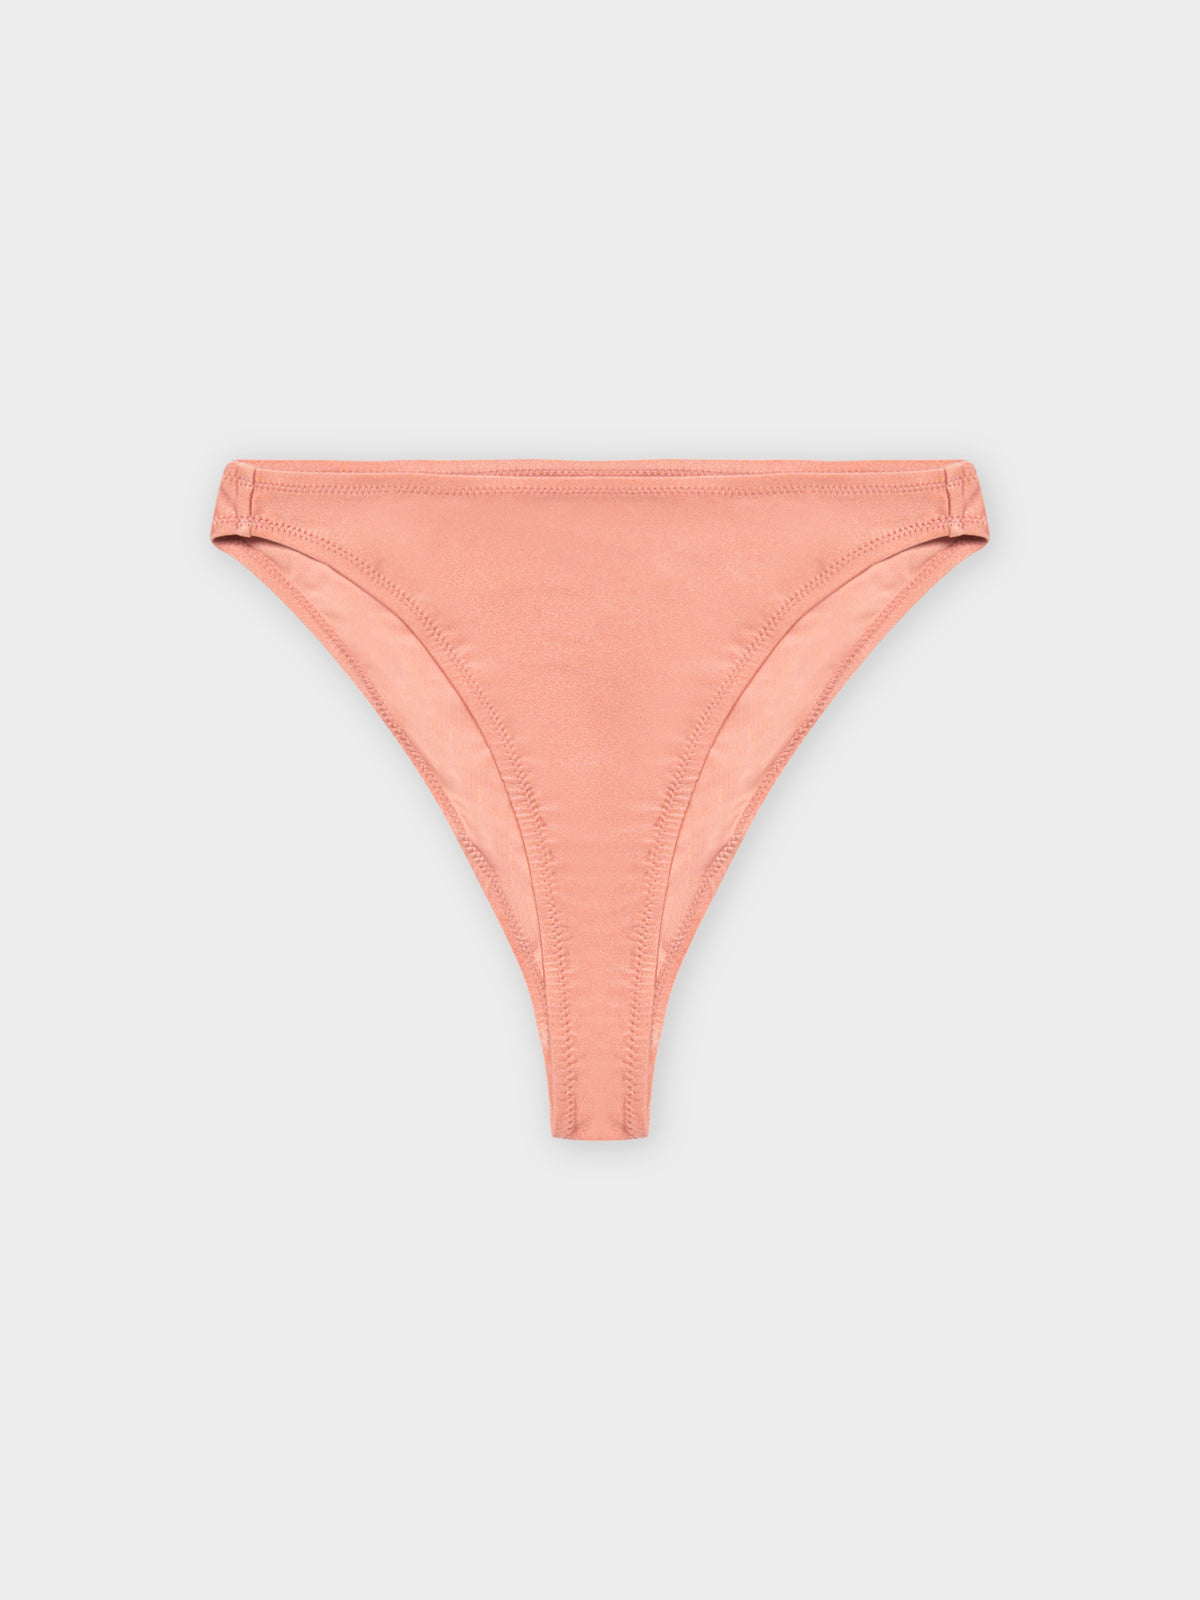 High-Shine 90s Bikini Briefs in Pink